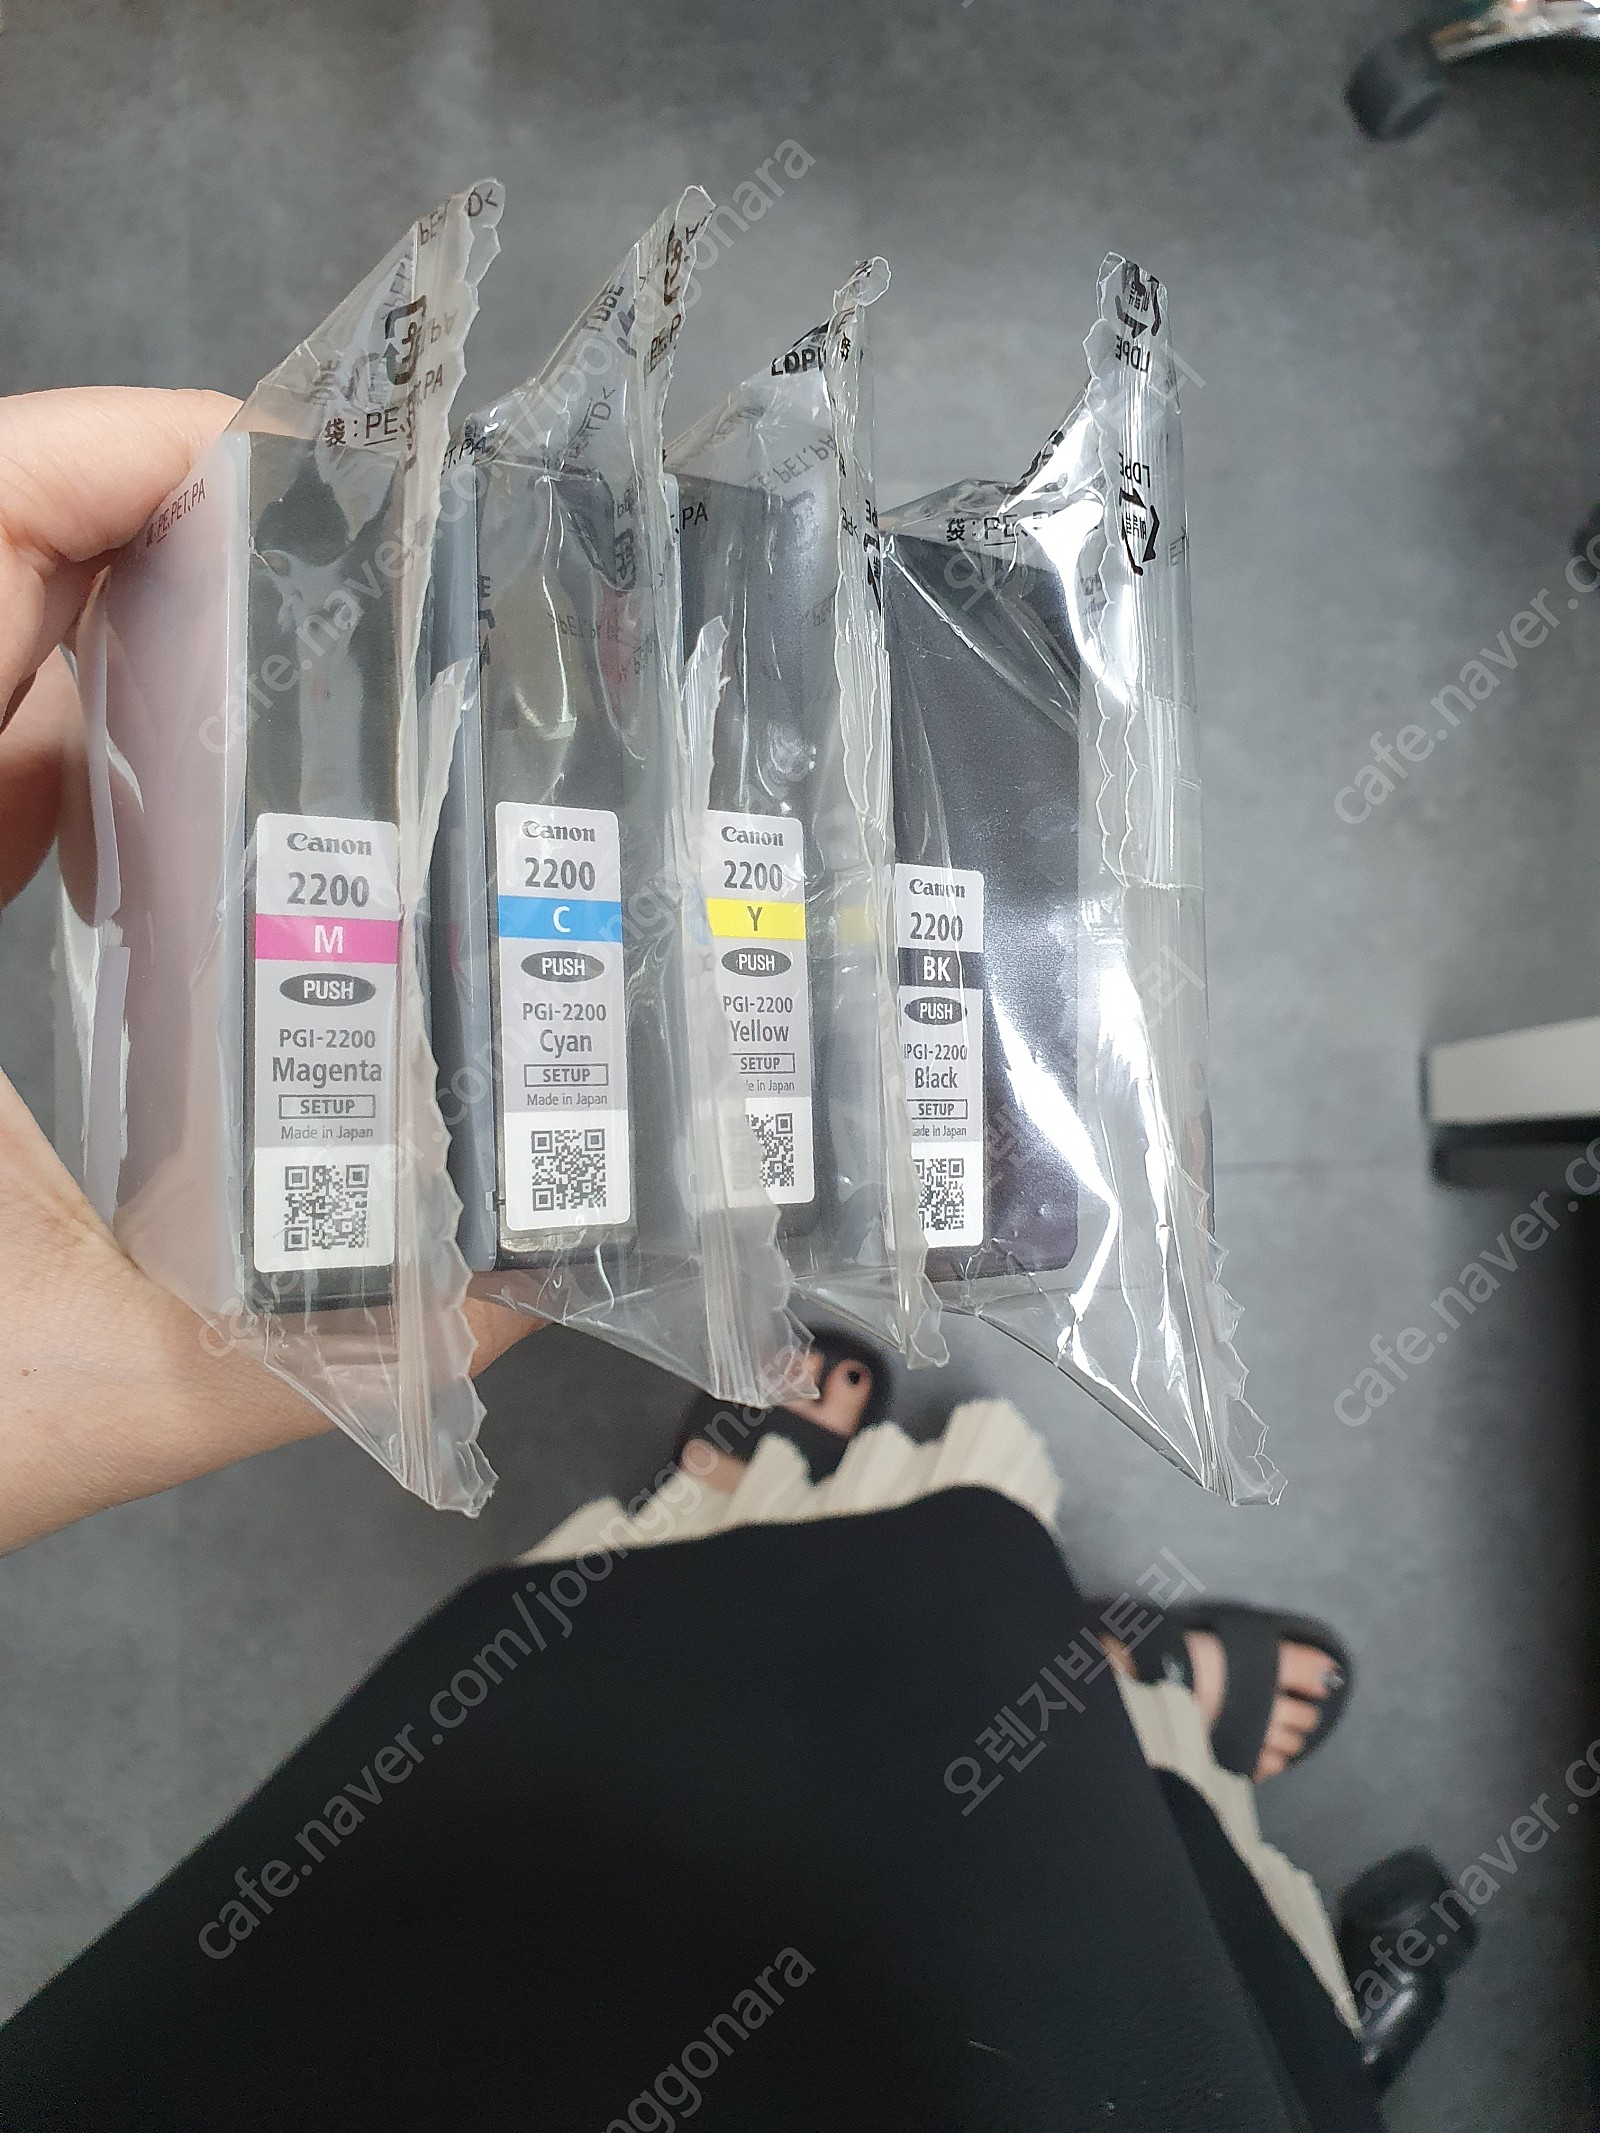 [새상품] 캐논 PGI-2200 번들정품 셋업 잉크카트리지 / 무한칩장착포함 (4색 1세트) (20,000원)